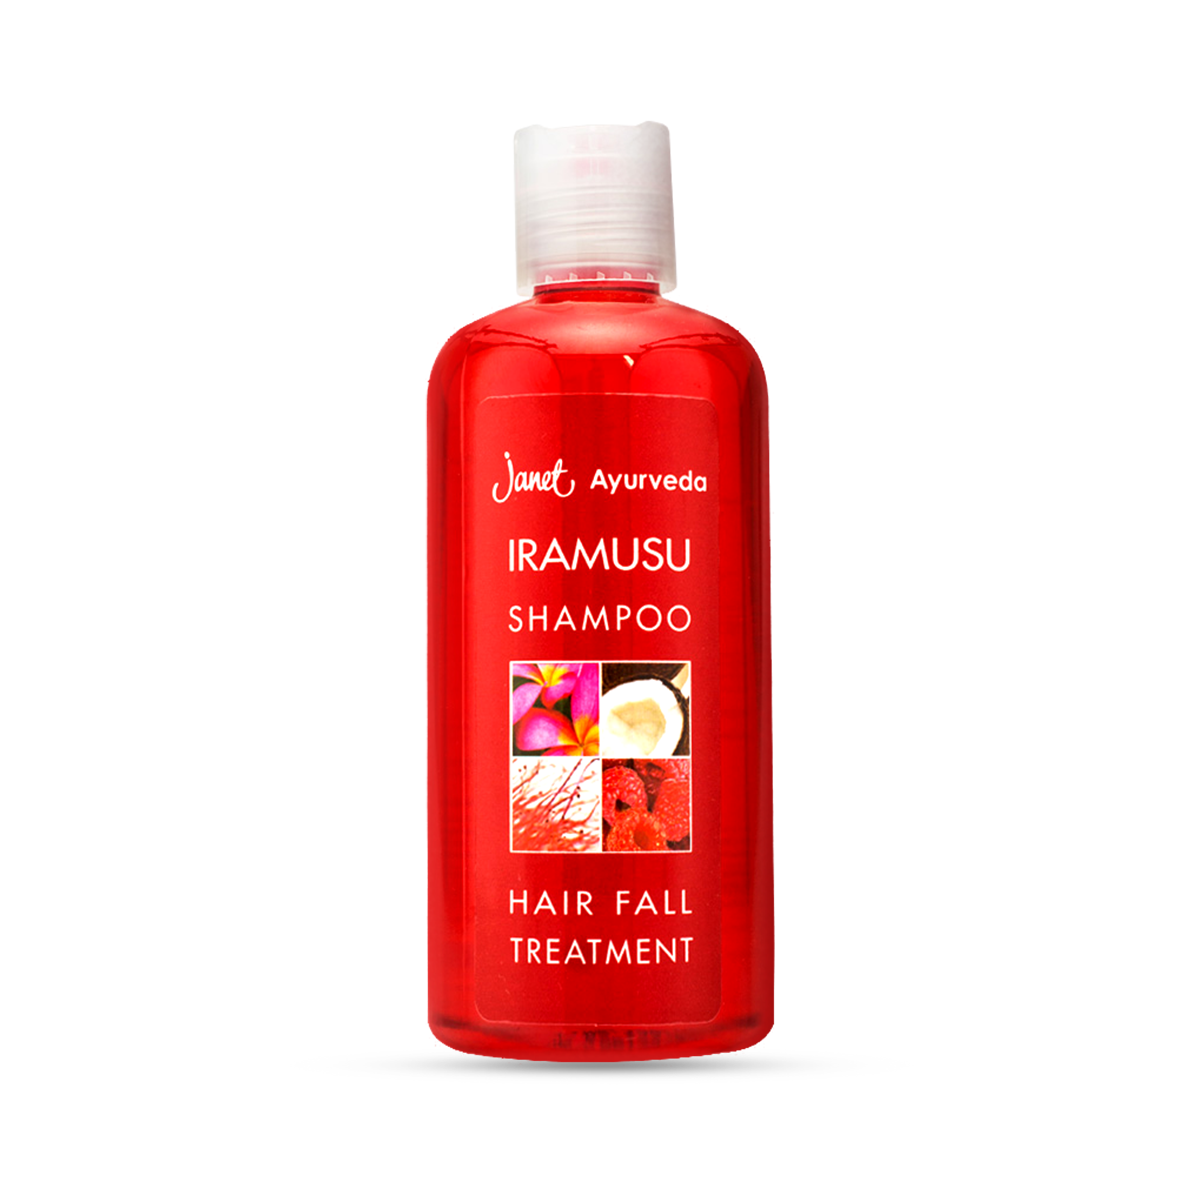 J/Iramusu Shampoo